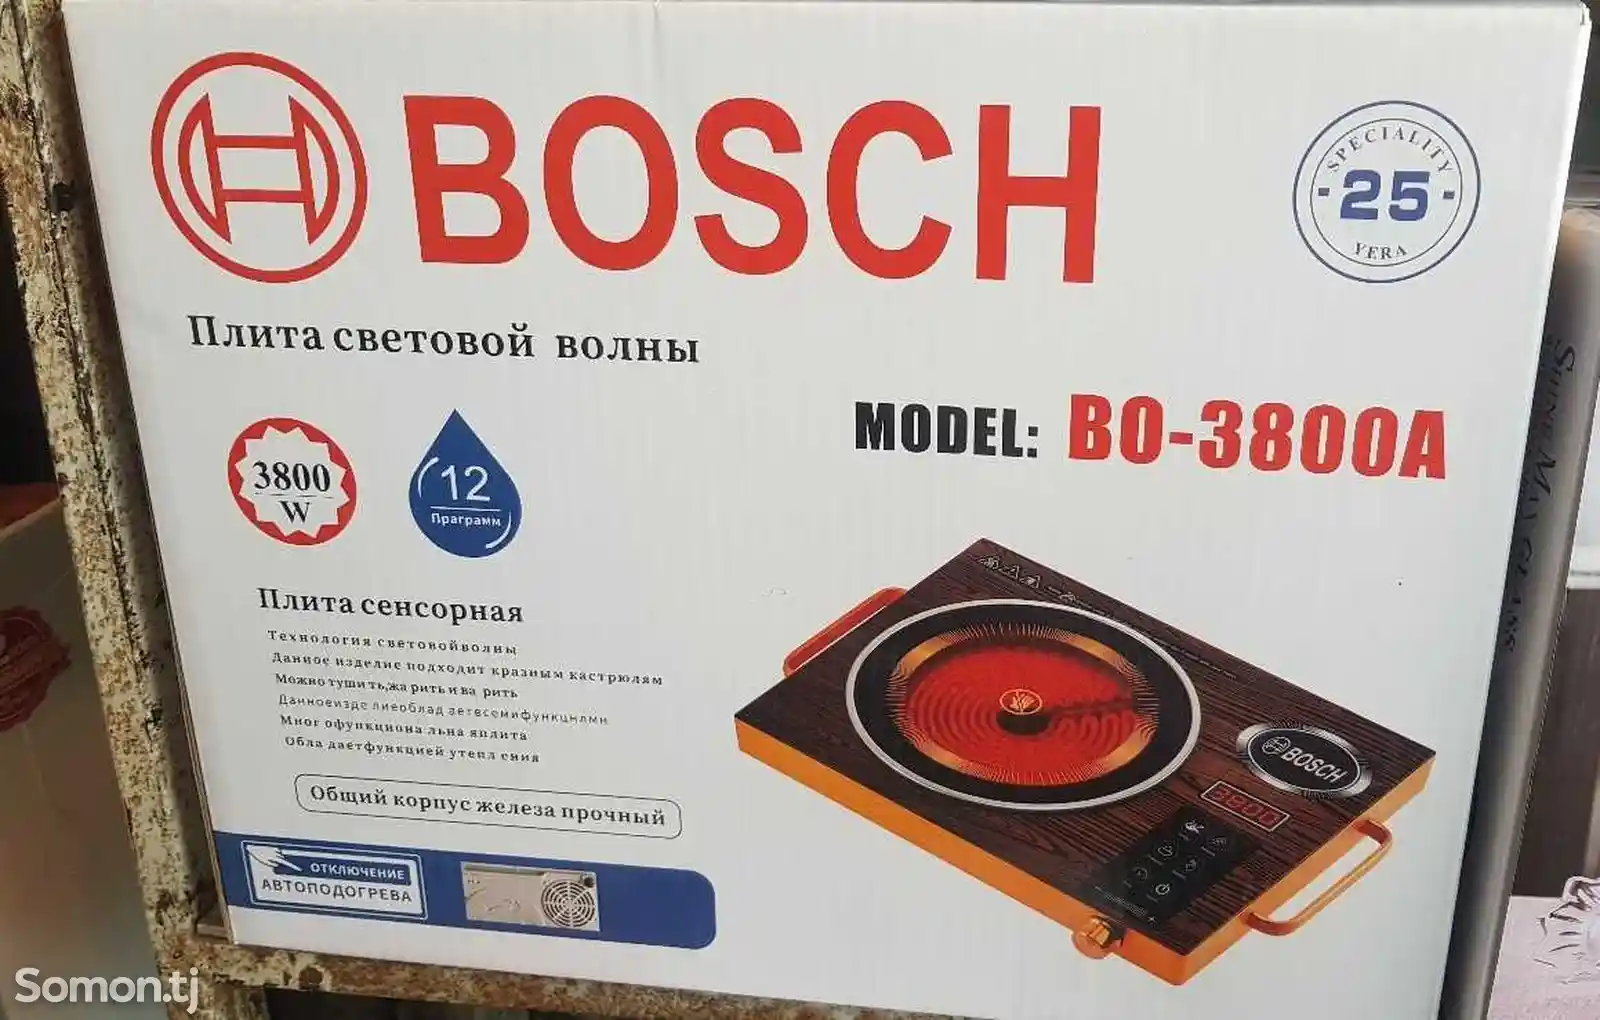 Сенсорная плитка Bosch-1